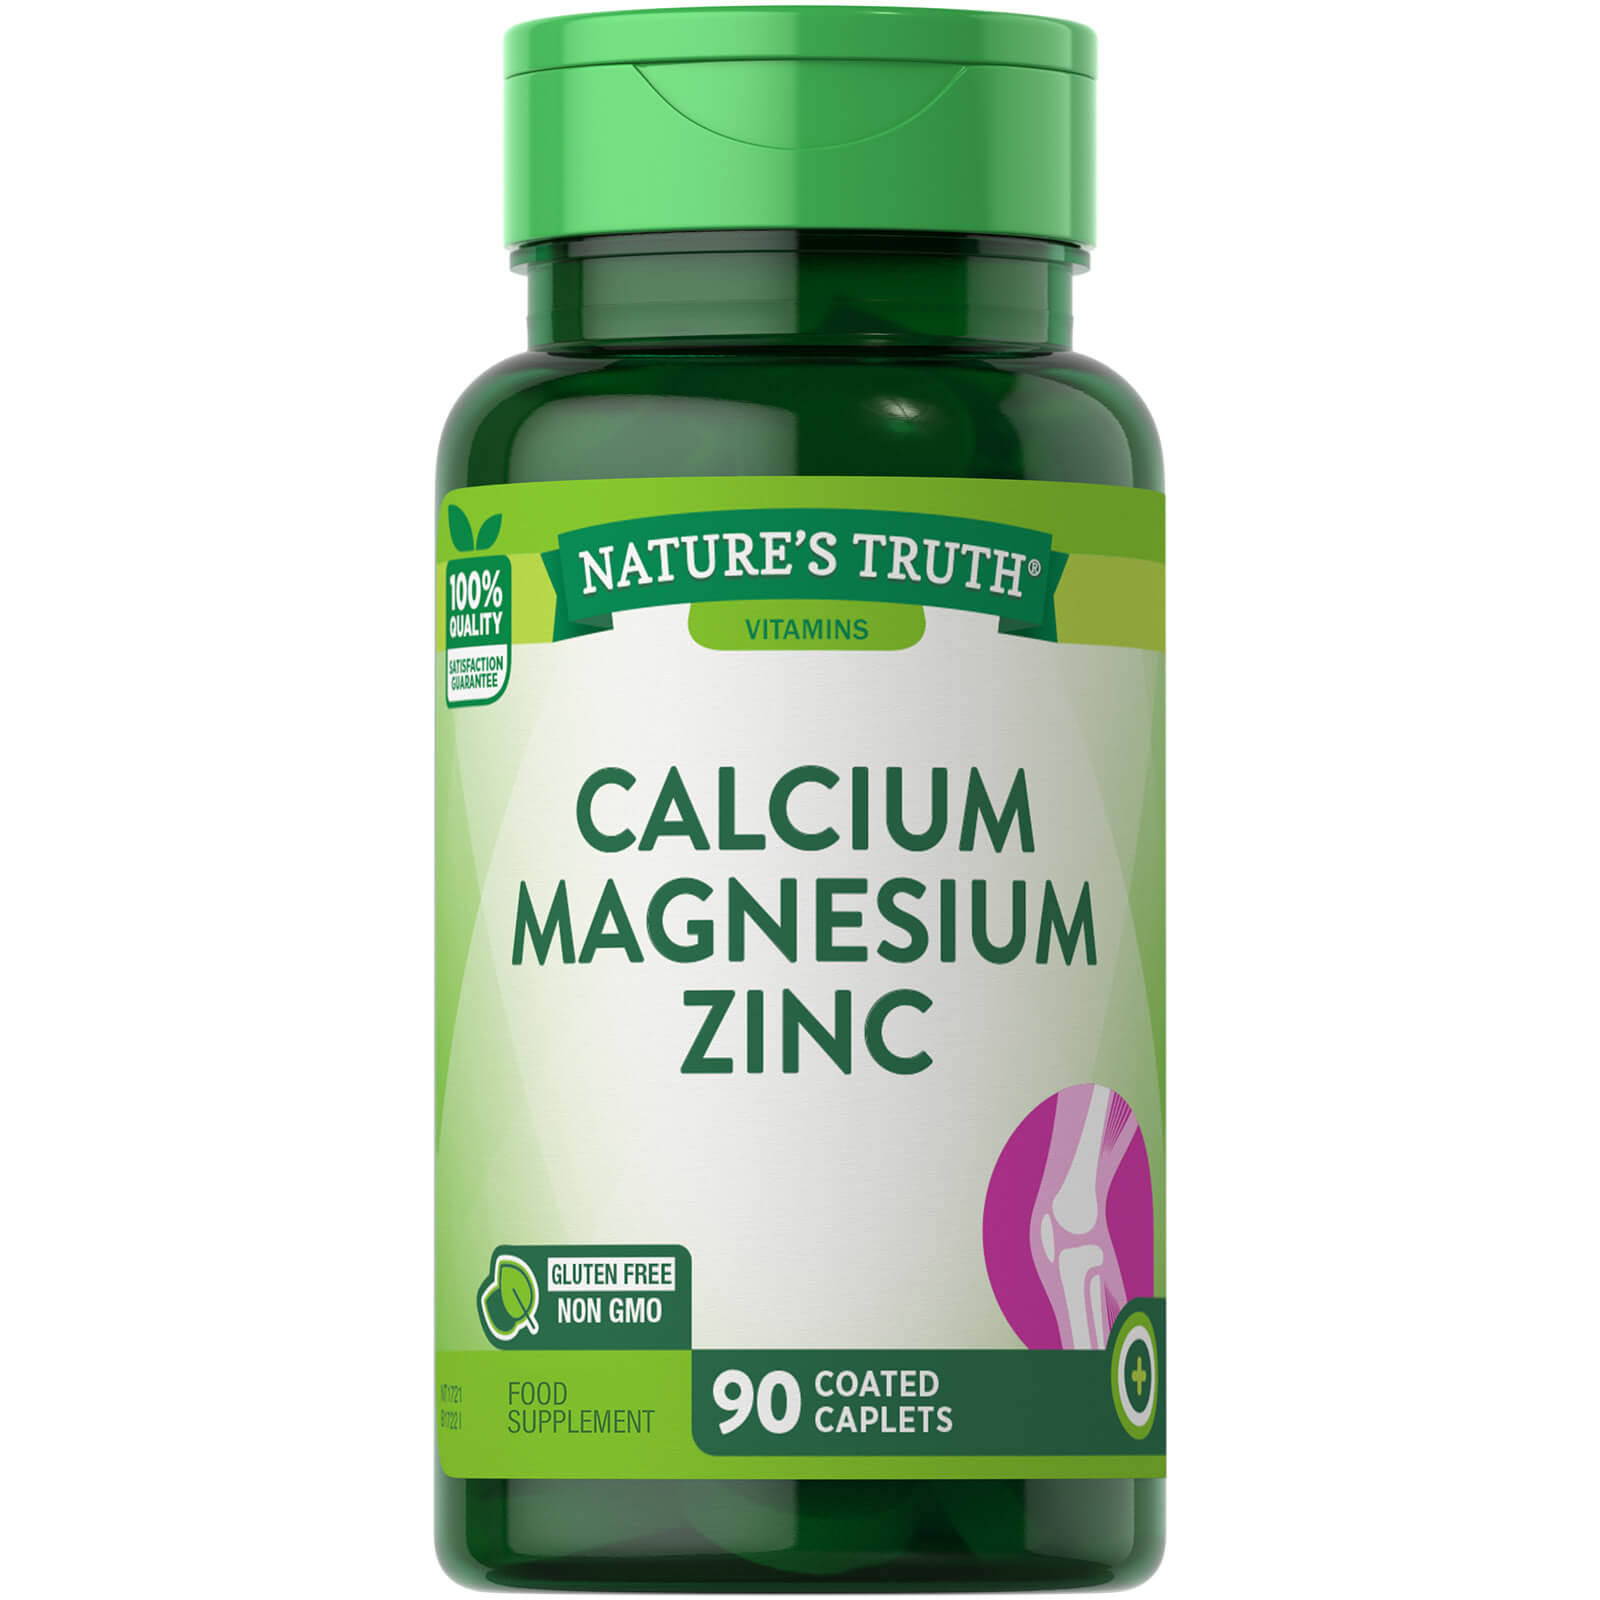 Nature's Truth Calcium Magnesium Zinc Plus Vitamin D3 Supplements - 90ct